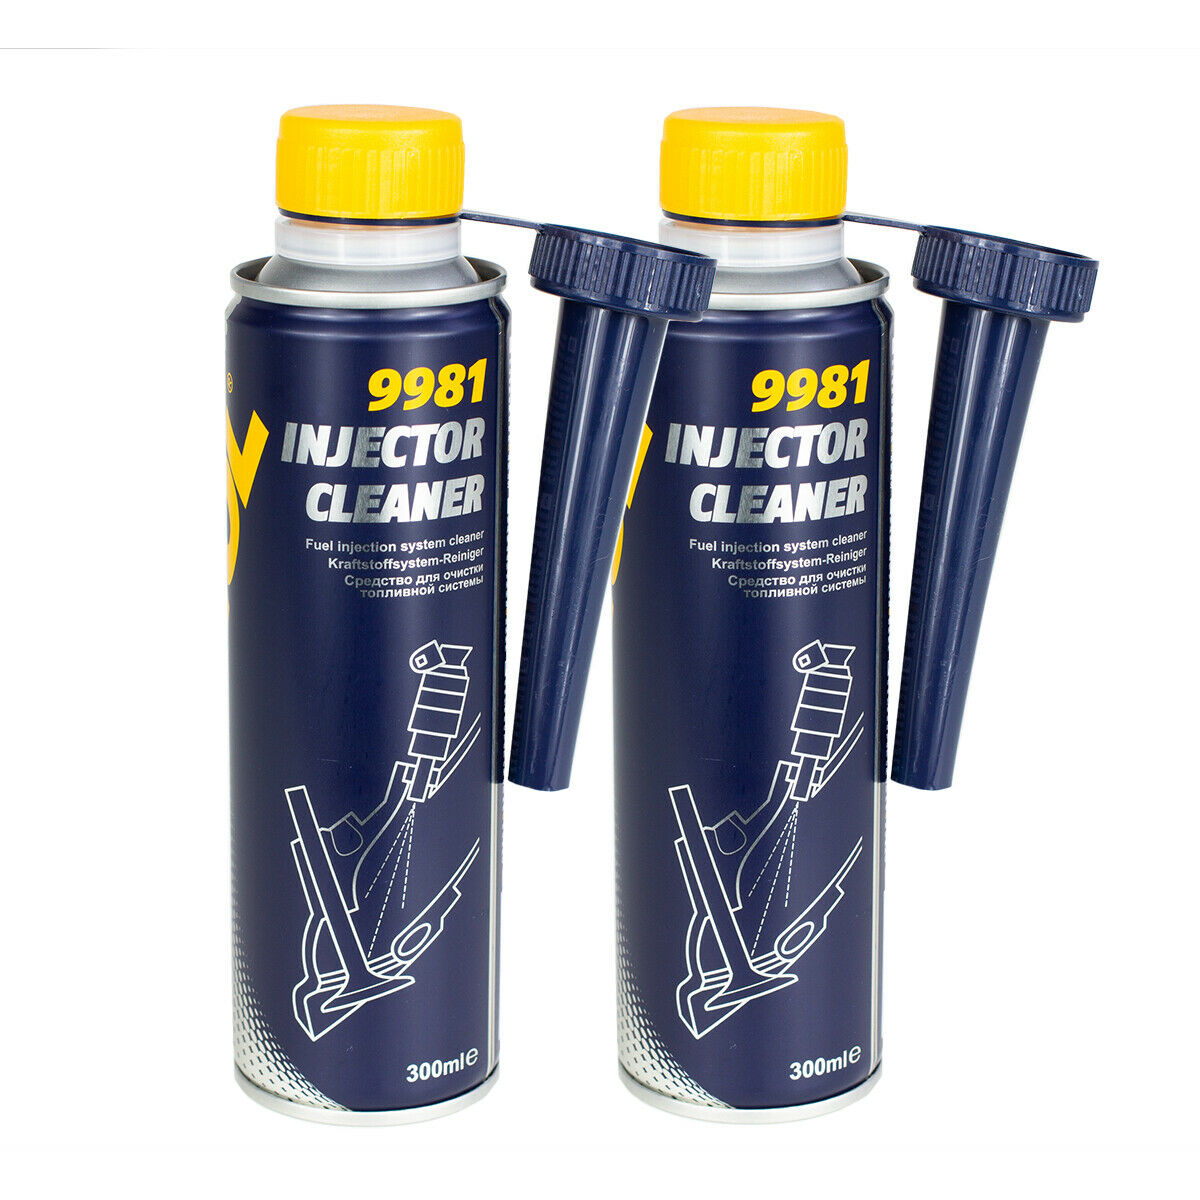 Mannol Injektor Reiniger Kraftstoff Additiv 300ml Injector Cleaner